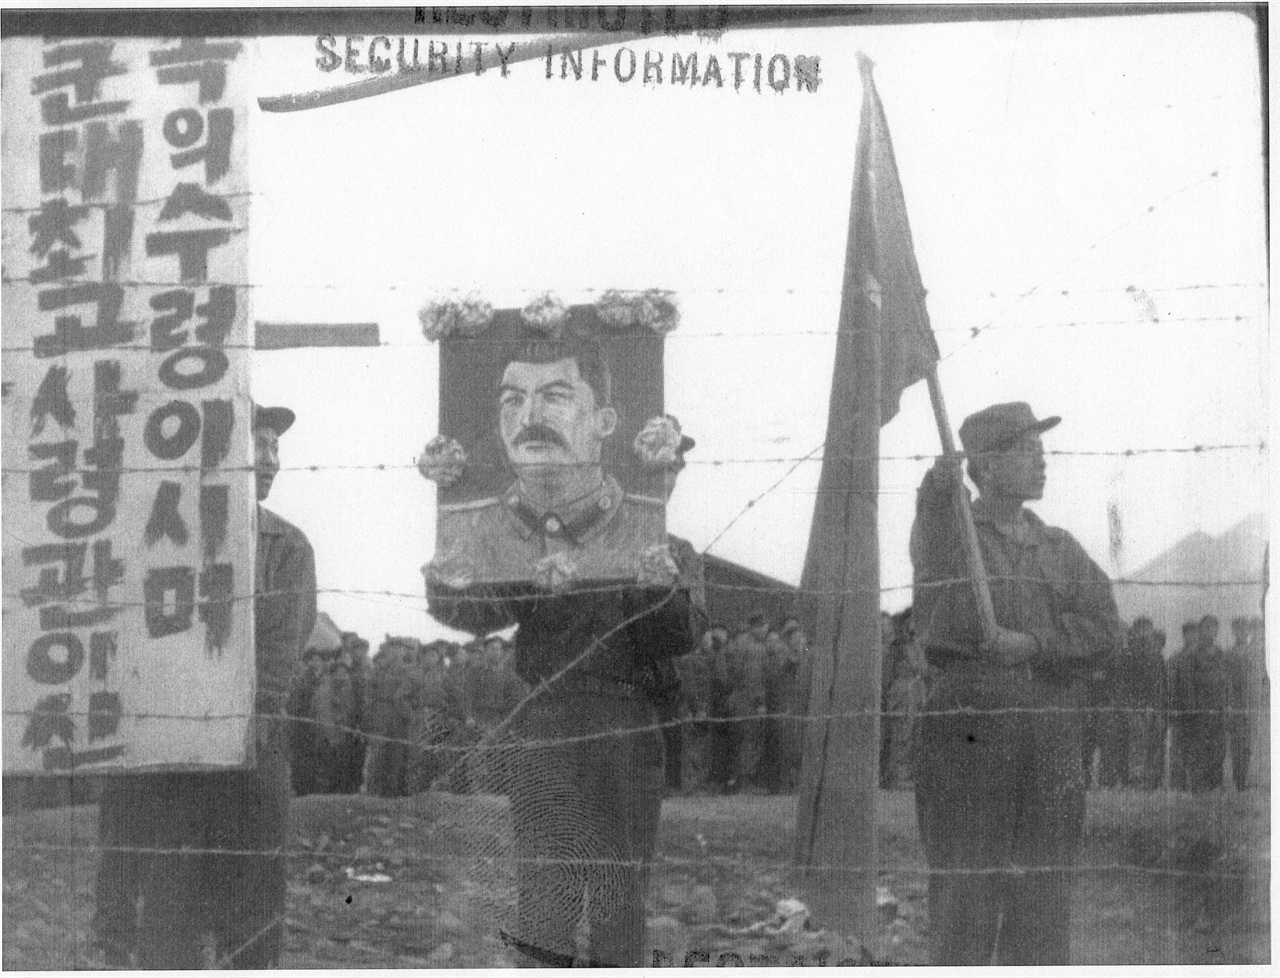  1952. 2. 8. 거제도, 포로수용소의 포로들이 스탈린 초상과 인공기를 들고 철조망 안에서 시위하고 있다.